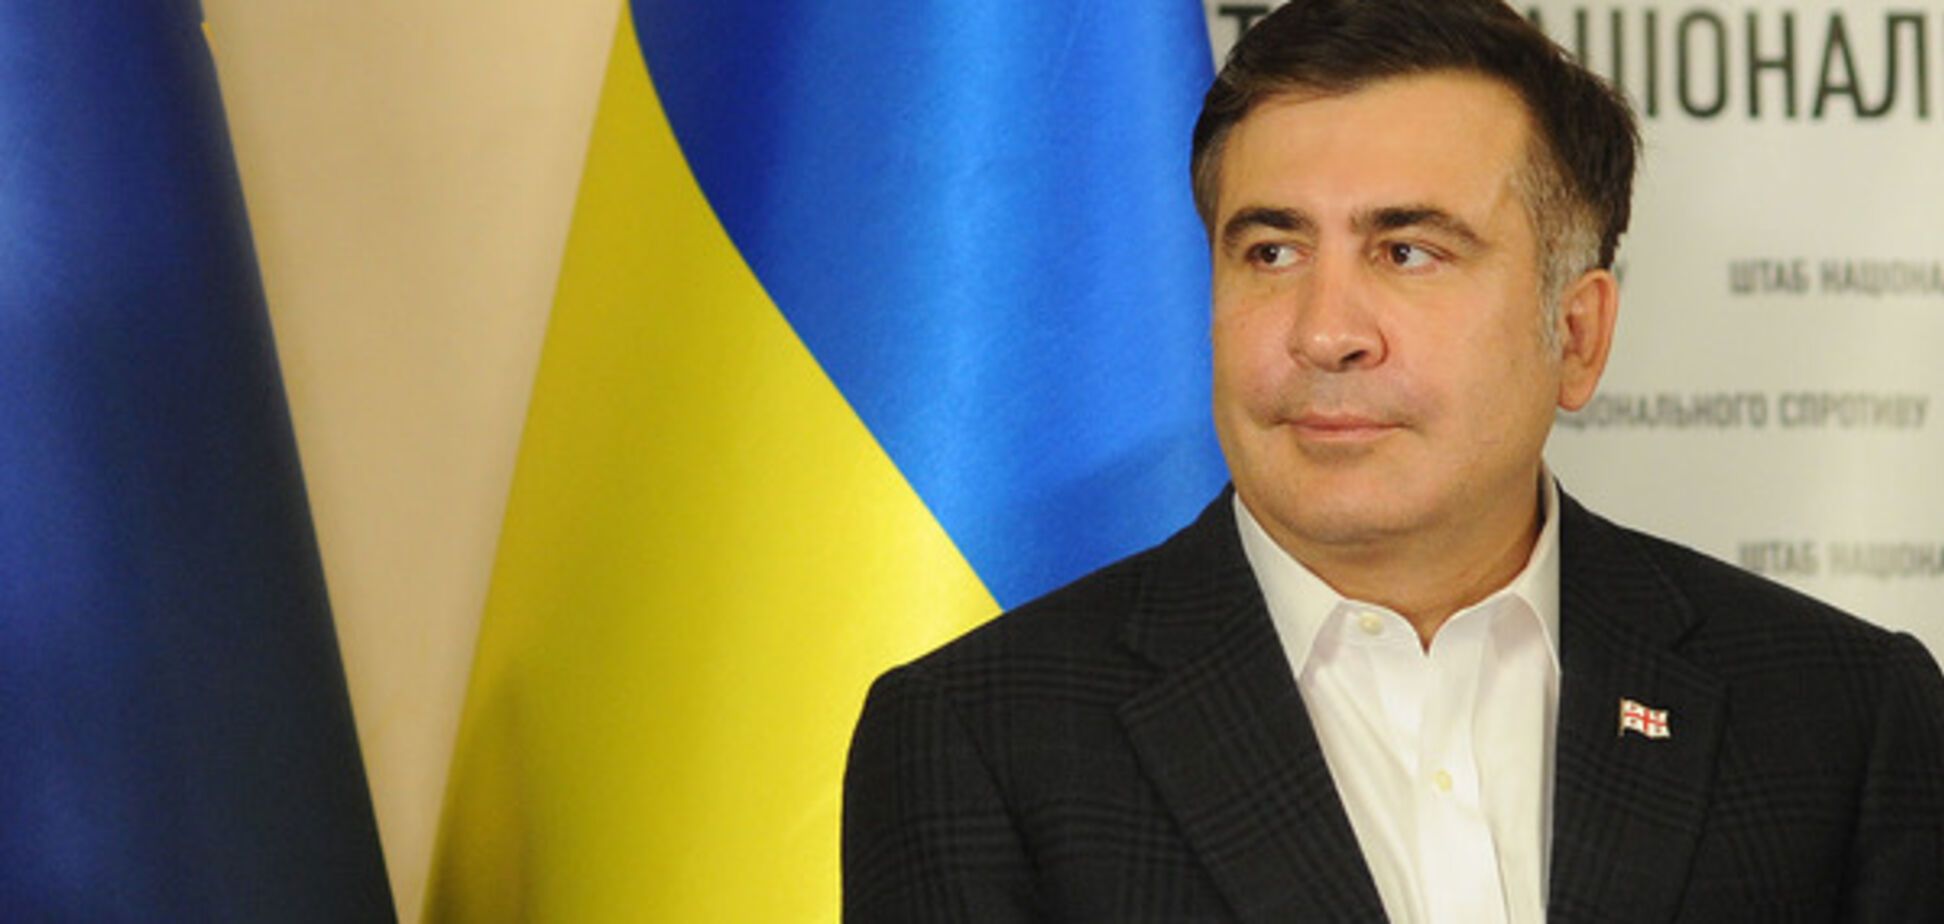 'Ну тогда все еще хуже': Саакашвили ответили на его истерику с подписью